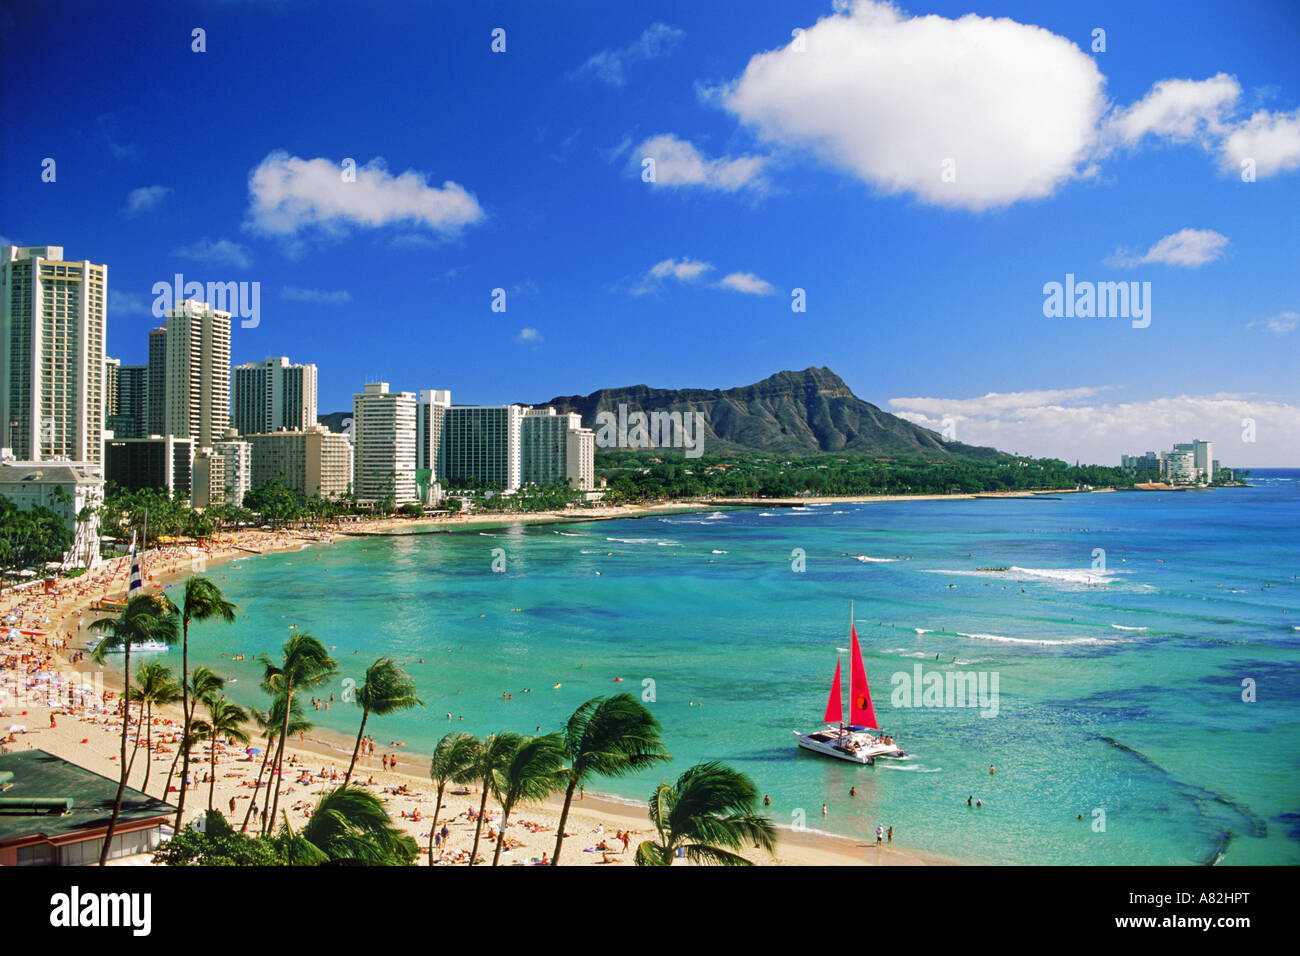 La plage de Waikiki et Diamond Head et en catamaran beach front hotels sur l'Ile Oahu à Hawaii Banque D'Images